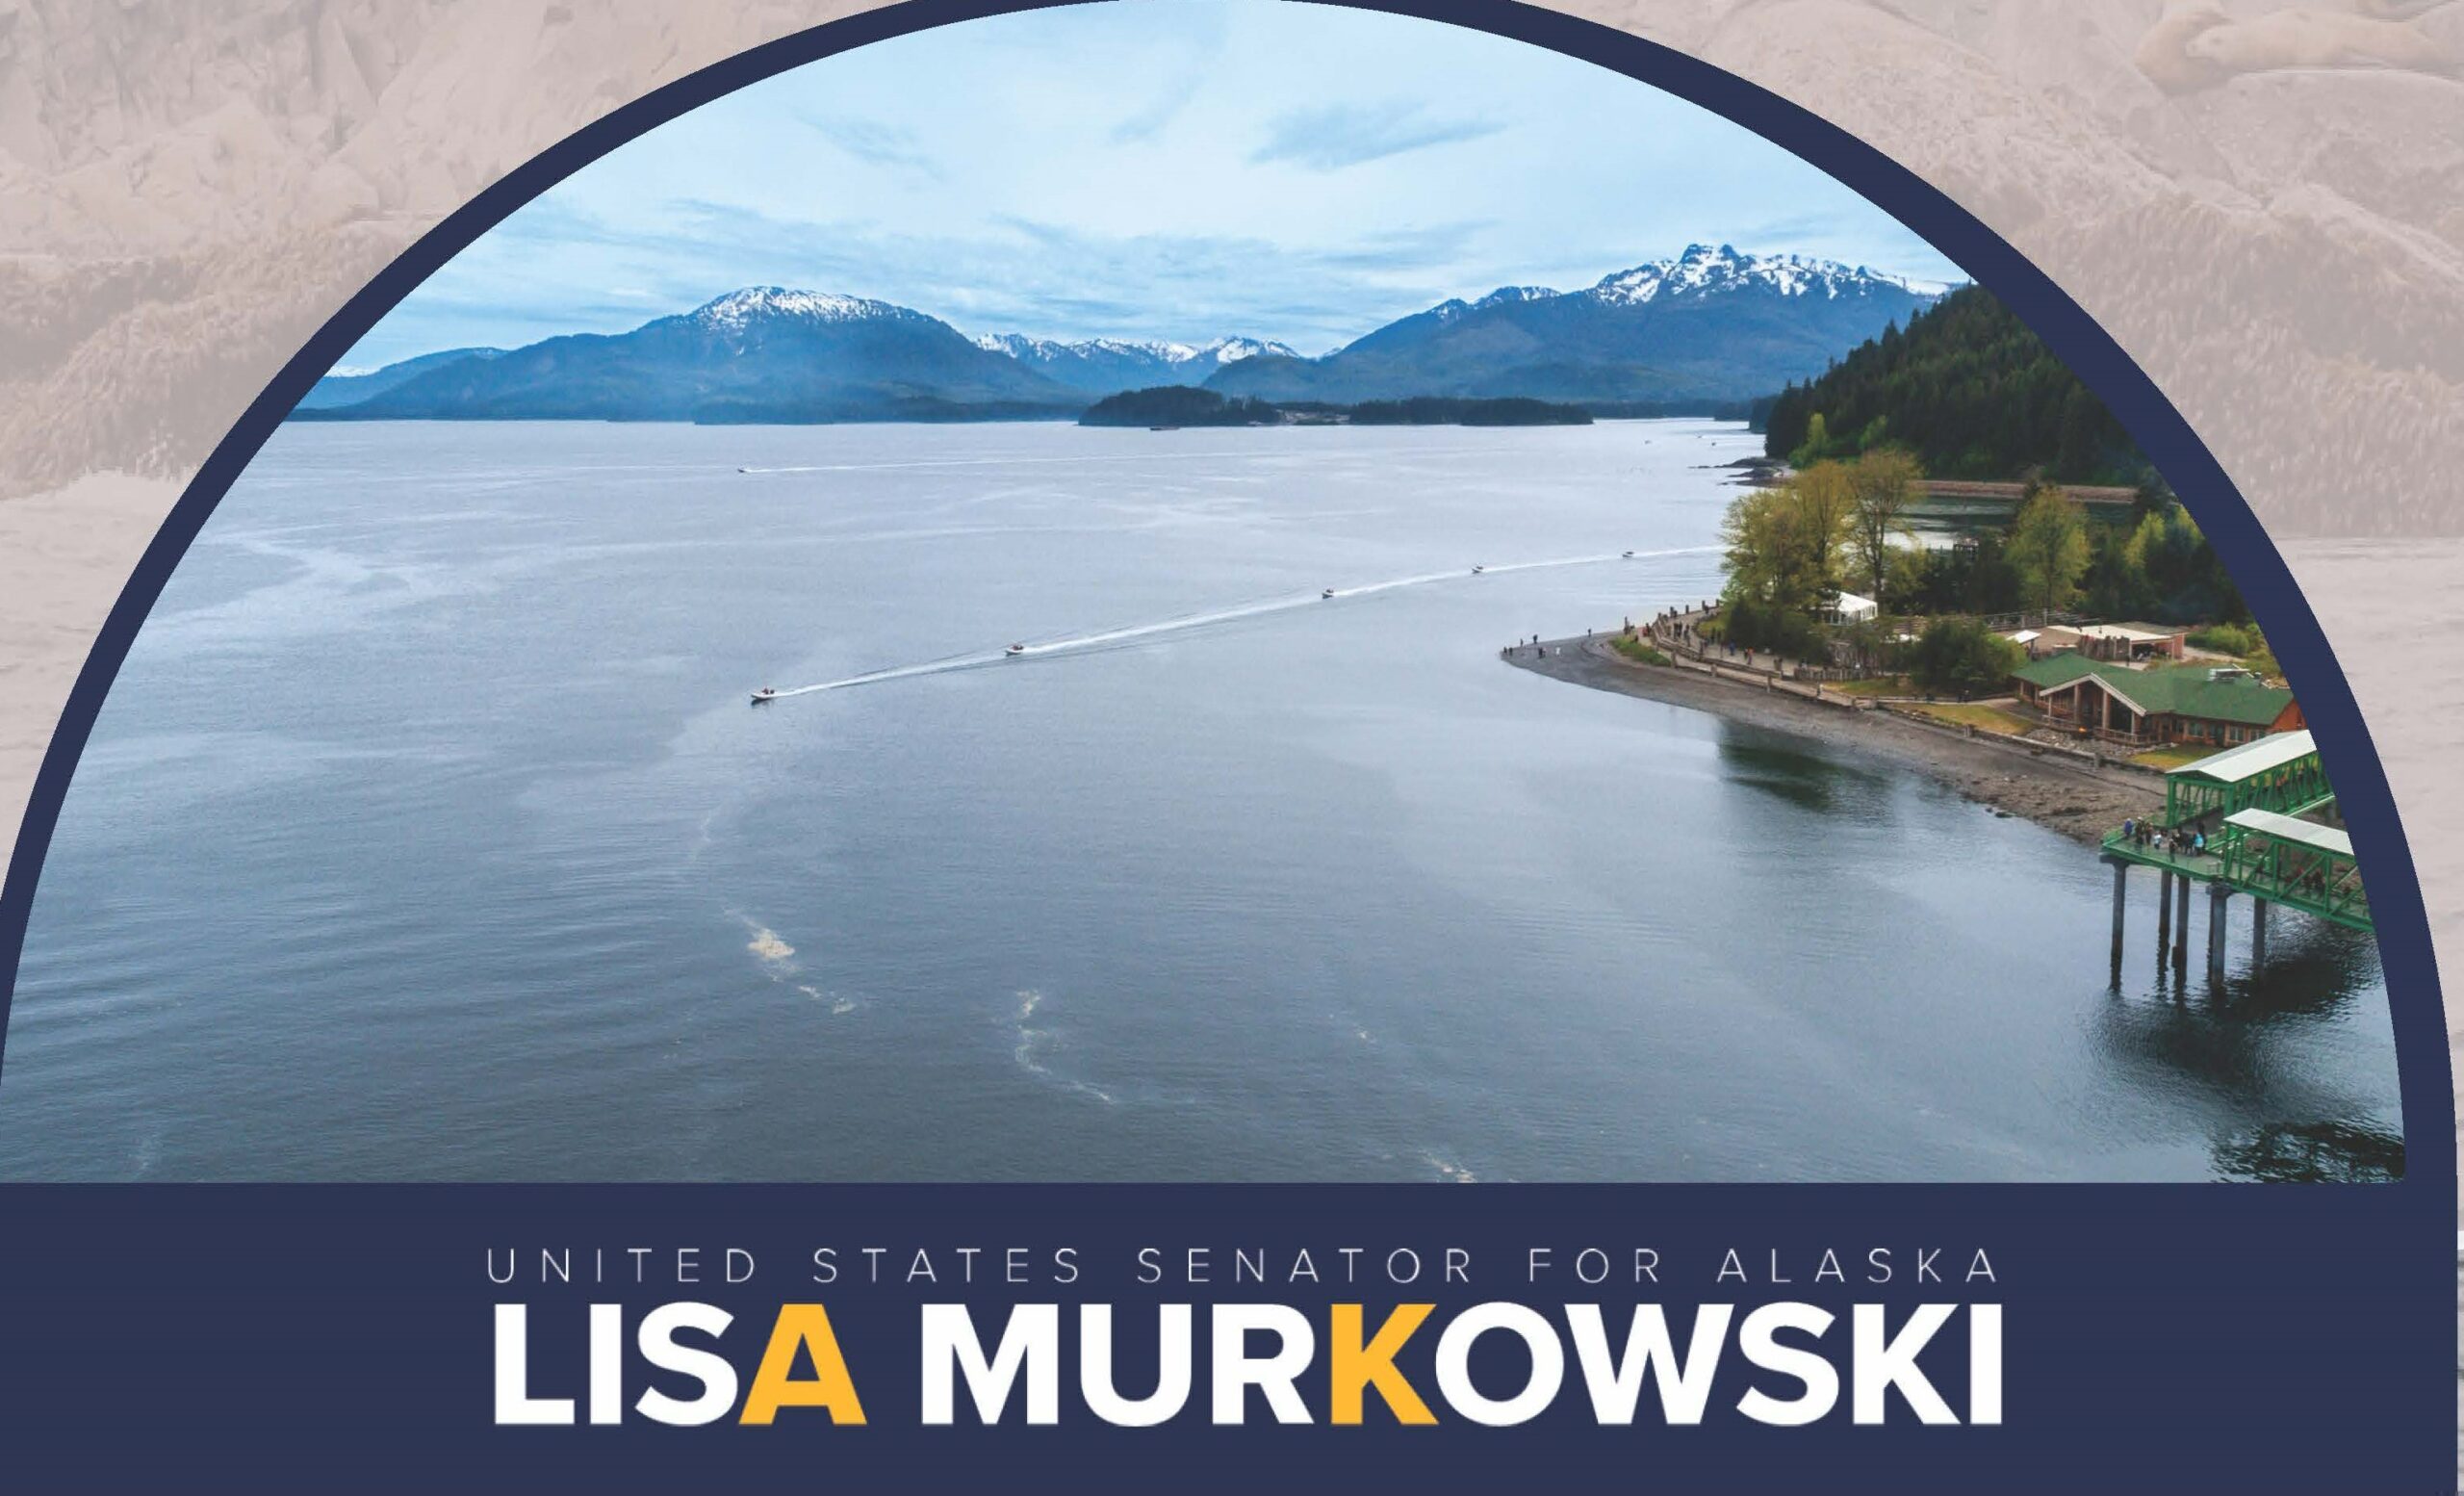 Visit Senator Lisa Murkowski’s Staff